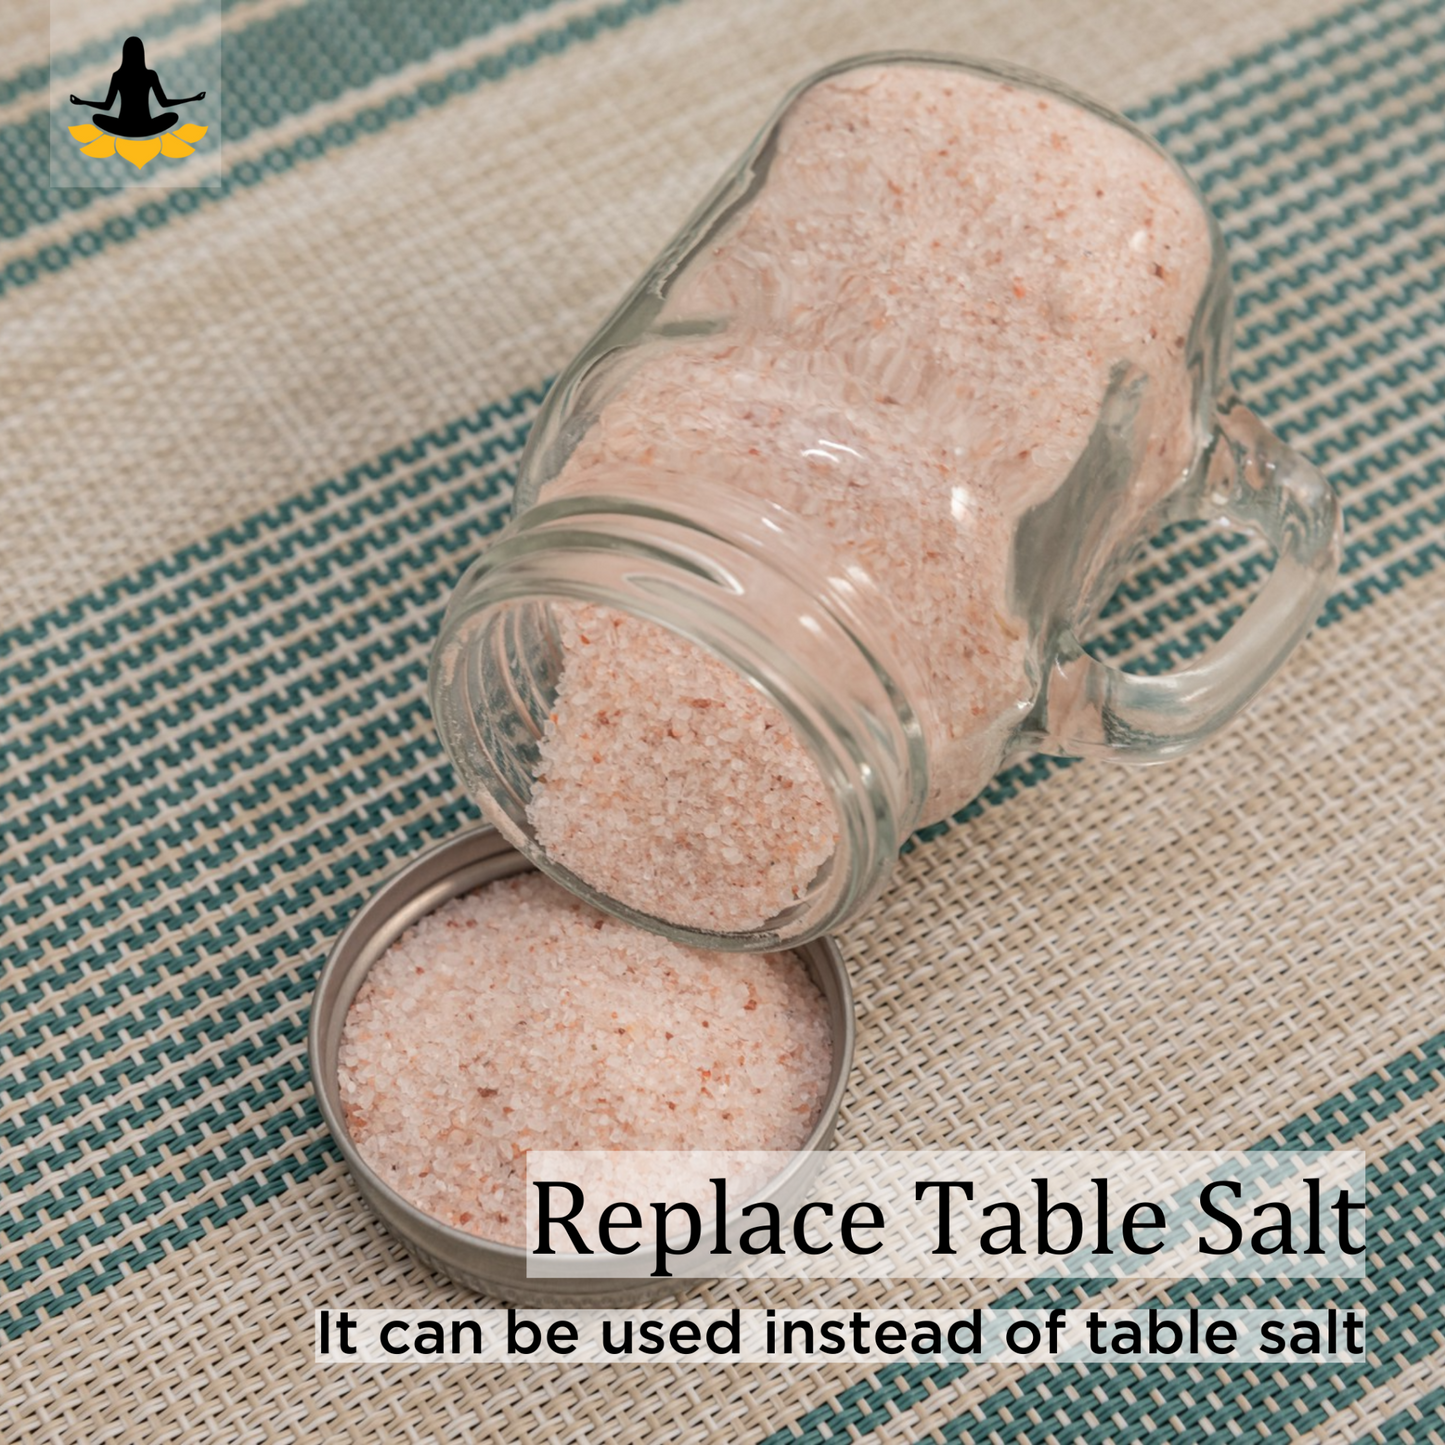 Himalayan Pink Salt - How to Use